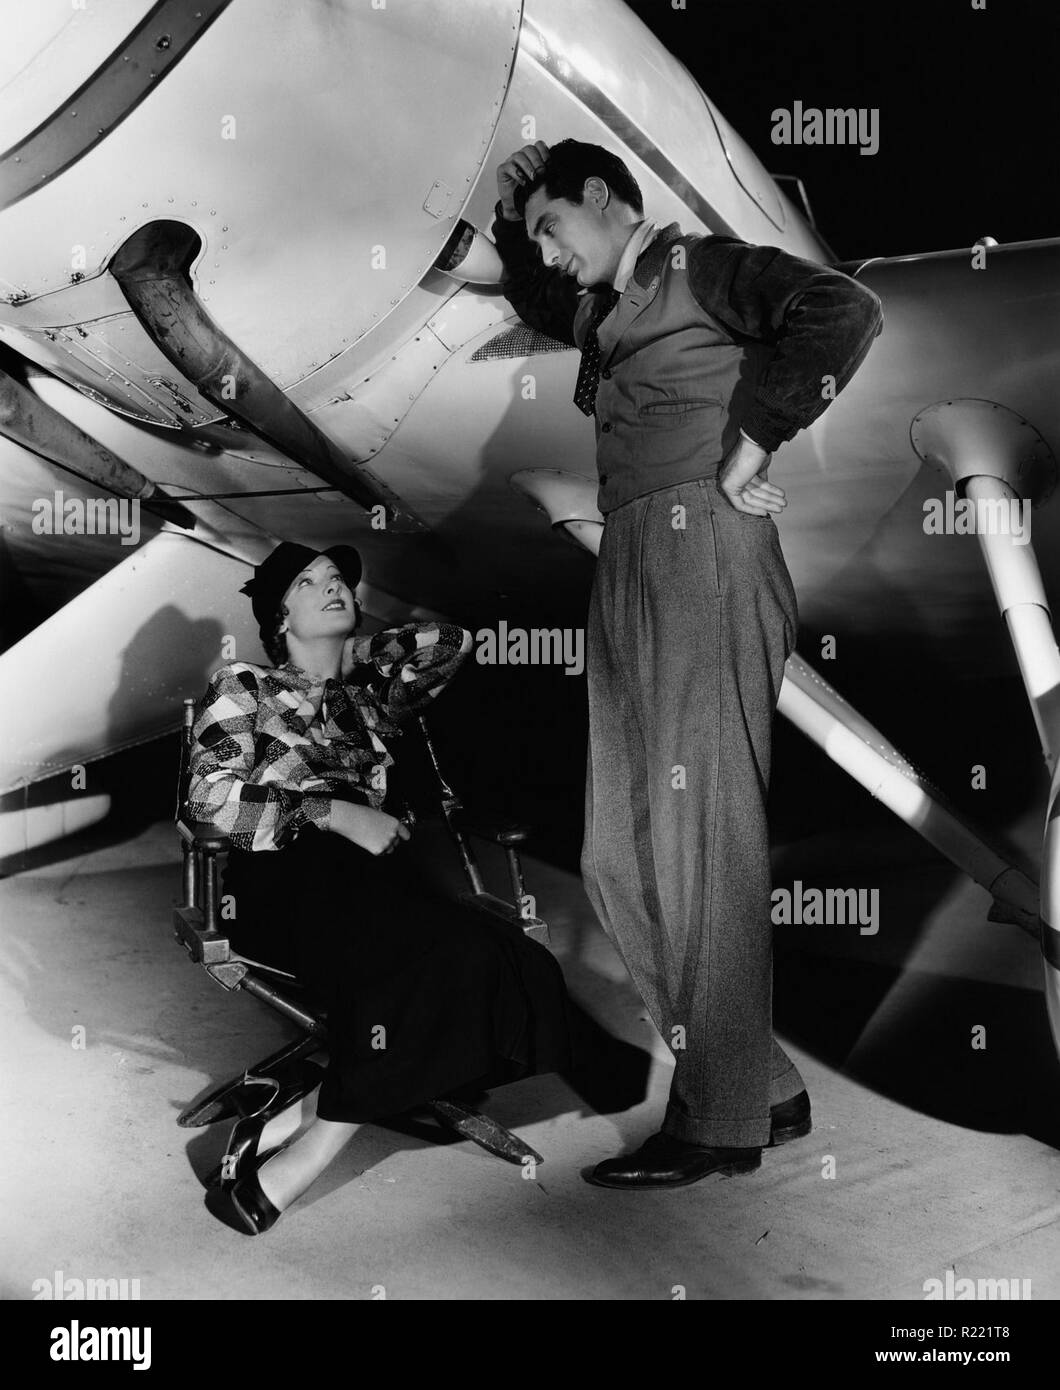 1935 motion picture starring Myrna Loy und Cary Grant und die Konzentration auf eine mutige Frau Aviator und Erfinder in einer verzweifelten Situation. Flügel im Dunkeln unter der Regie von James Hochwasser und von Arthur Hornblow jr., Der Film produziert wurde, die ersten, die Loy und Grant zusammen gemacht, obwohl Loy der Biograph Emily does not sagt, dass Flügel in der Dunkelheit' Abfälle, ihre Talente und fordert einen unbeabsichtigten Lachen fest."[1] Der Film bemerkenswert bleibt als seltene Film Darstellung eines blinden Protagonisten (von Grant gespielt) während der 1930er Jahre, und ist auch für seine vollendet Luftaufnahmen unter der Regie von De bekannt Stockfoto